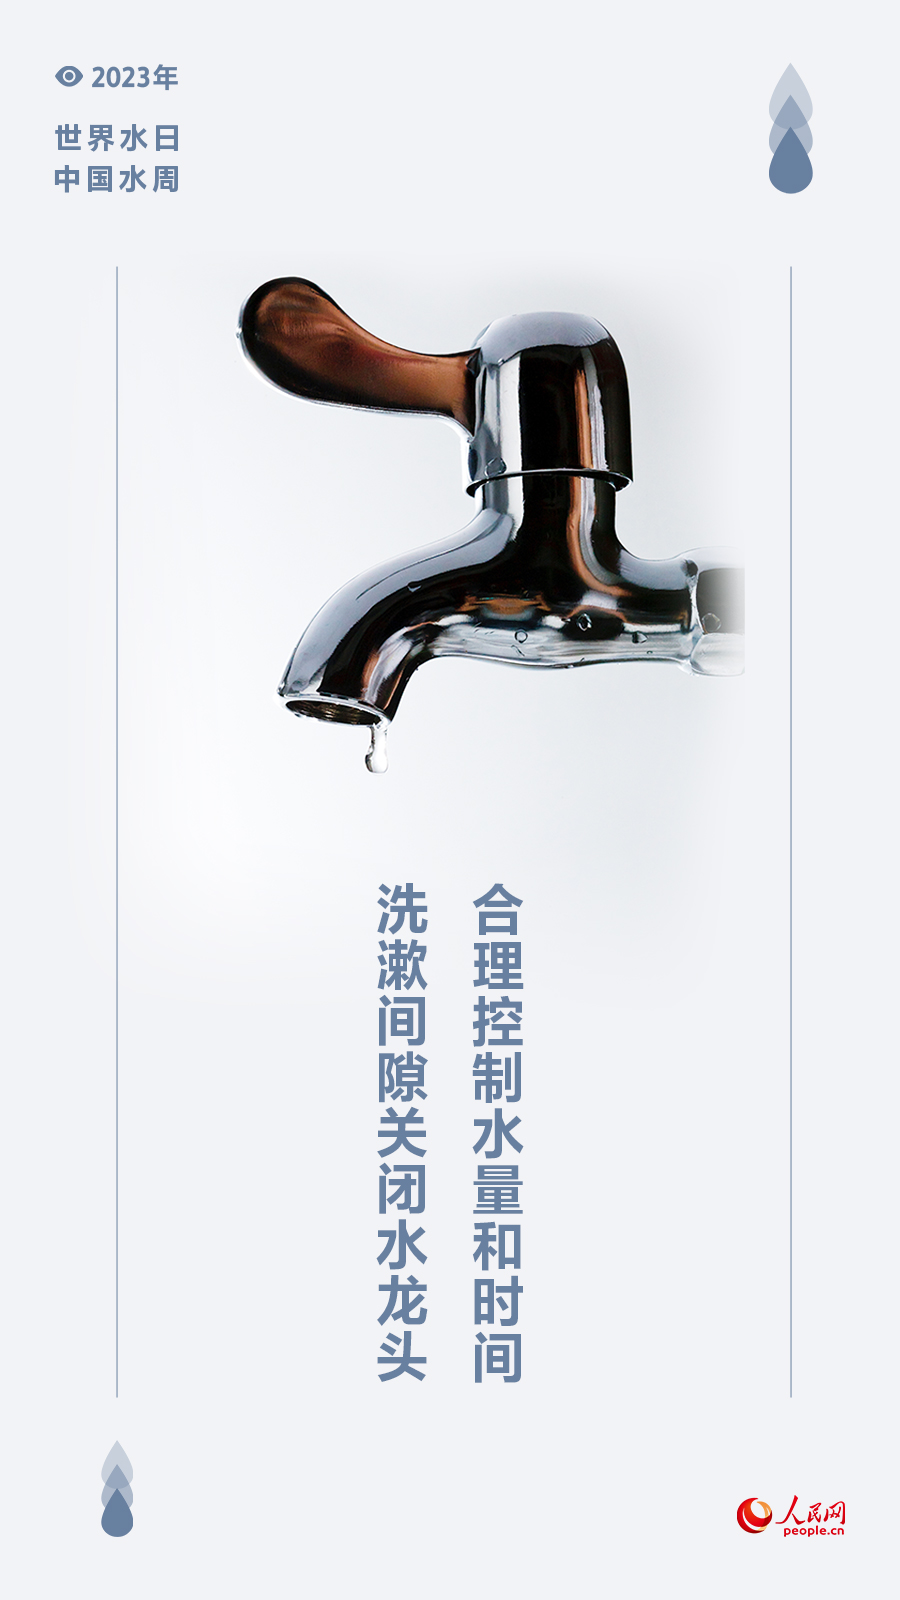 世界水日 中国水周 | 守护生命之源 节水护水从我做起